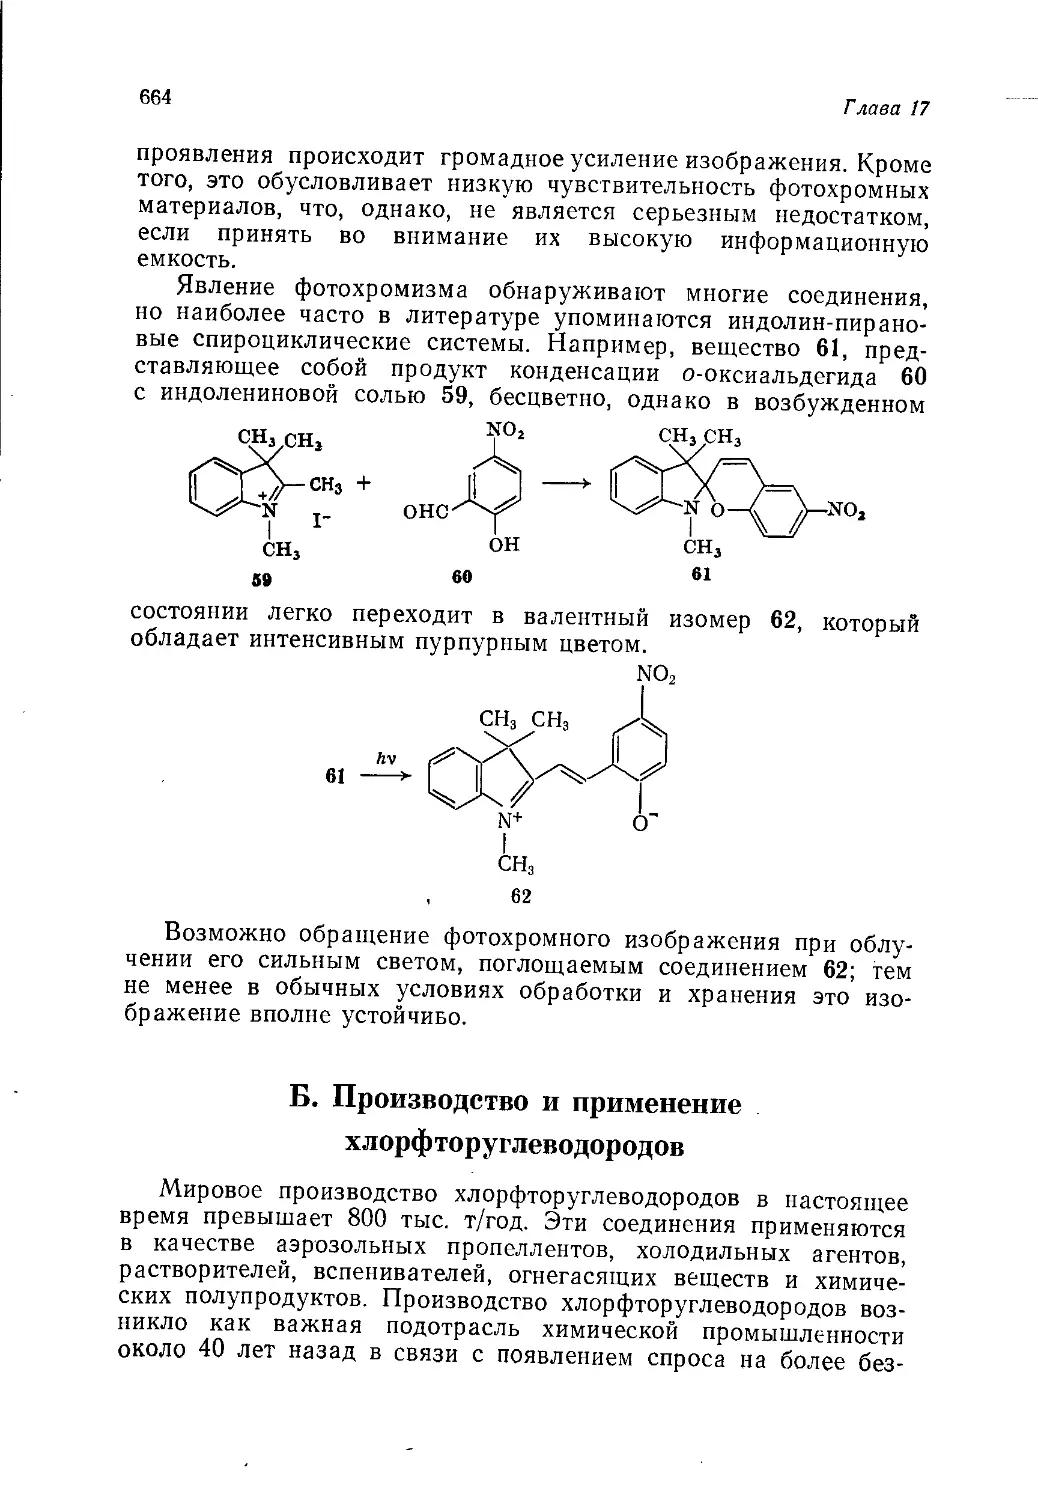 Б. Производство и применение хлорфторуглеводородов